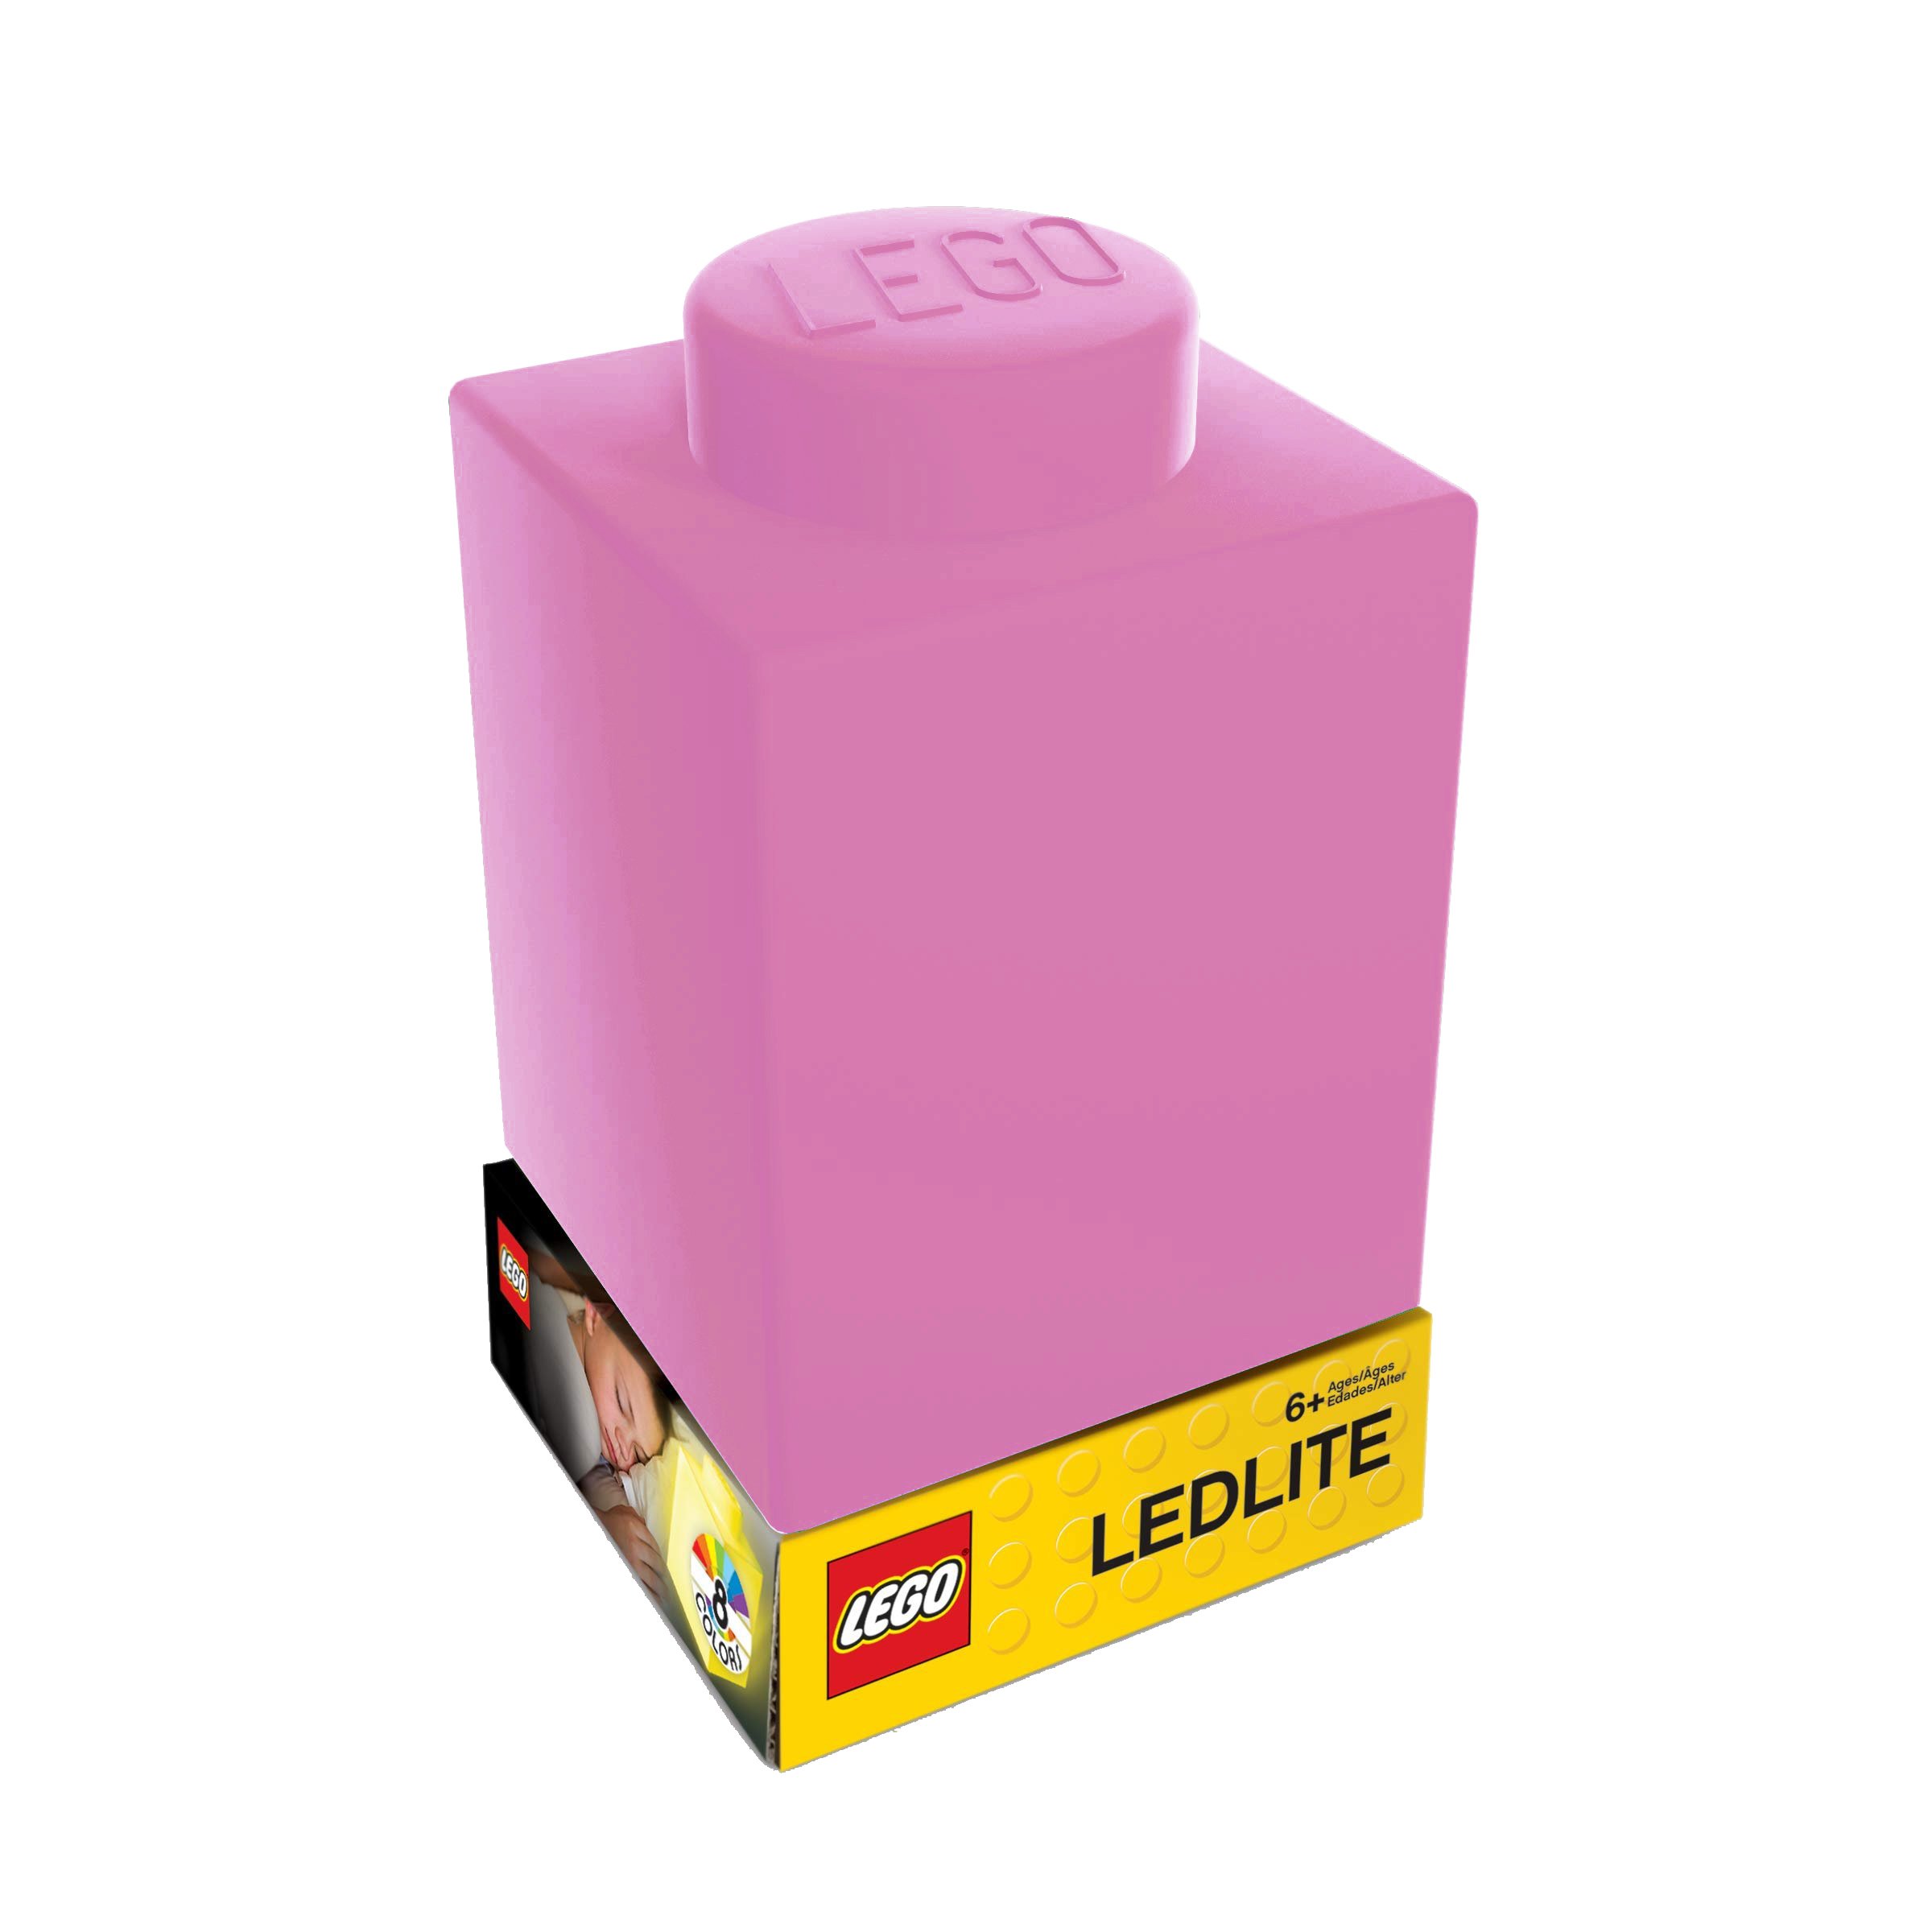 LEGO - Silicone Brick - Night Light w/LED - Pink